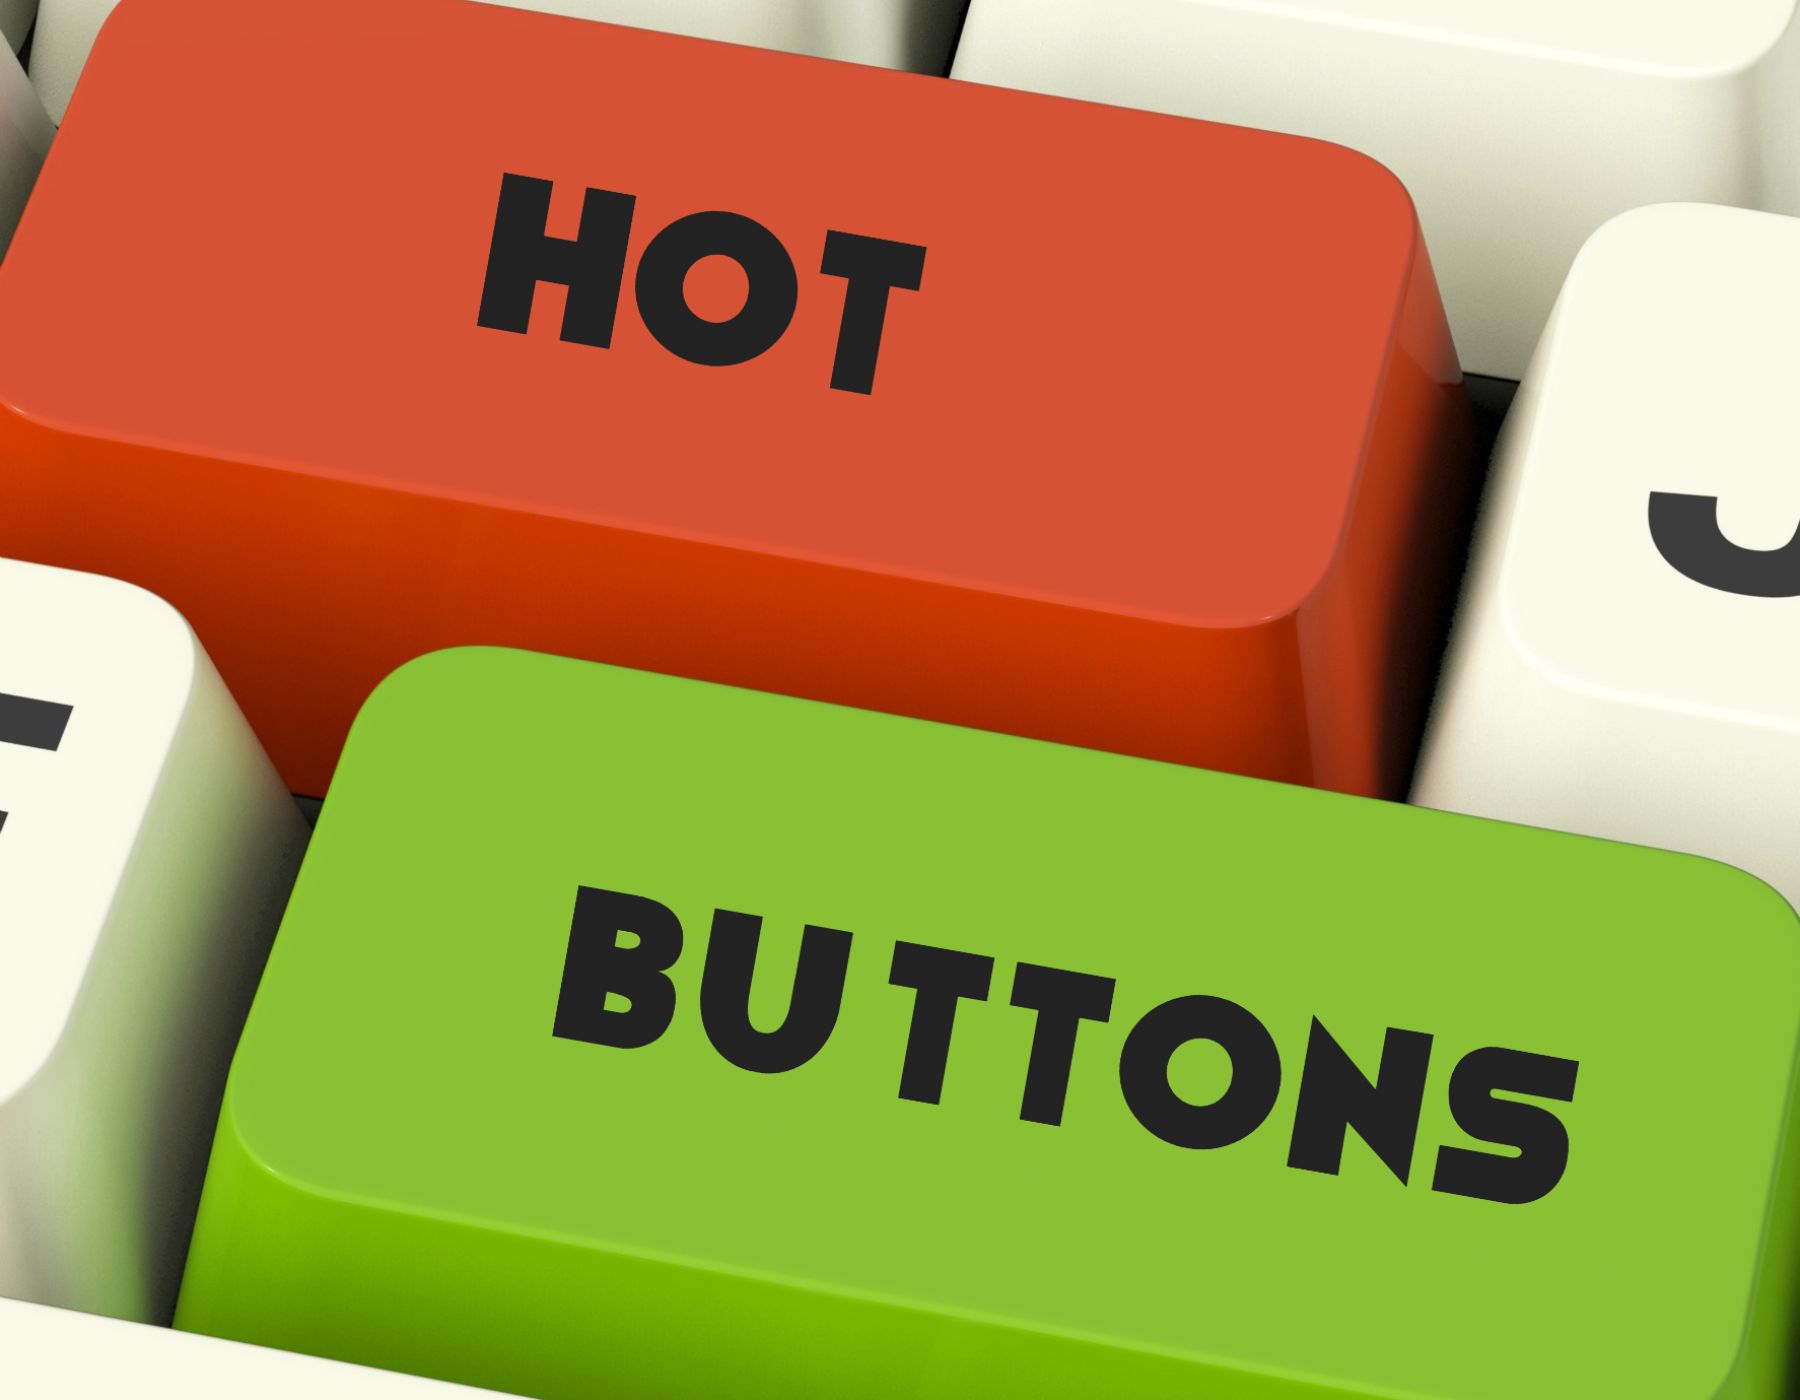 Hot Buttons